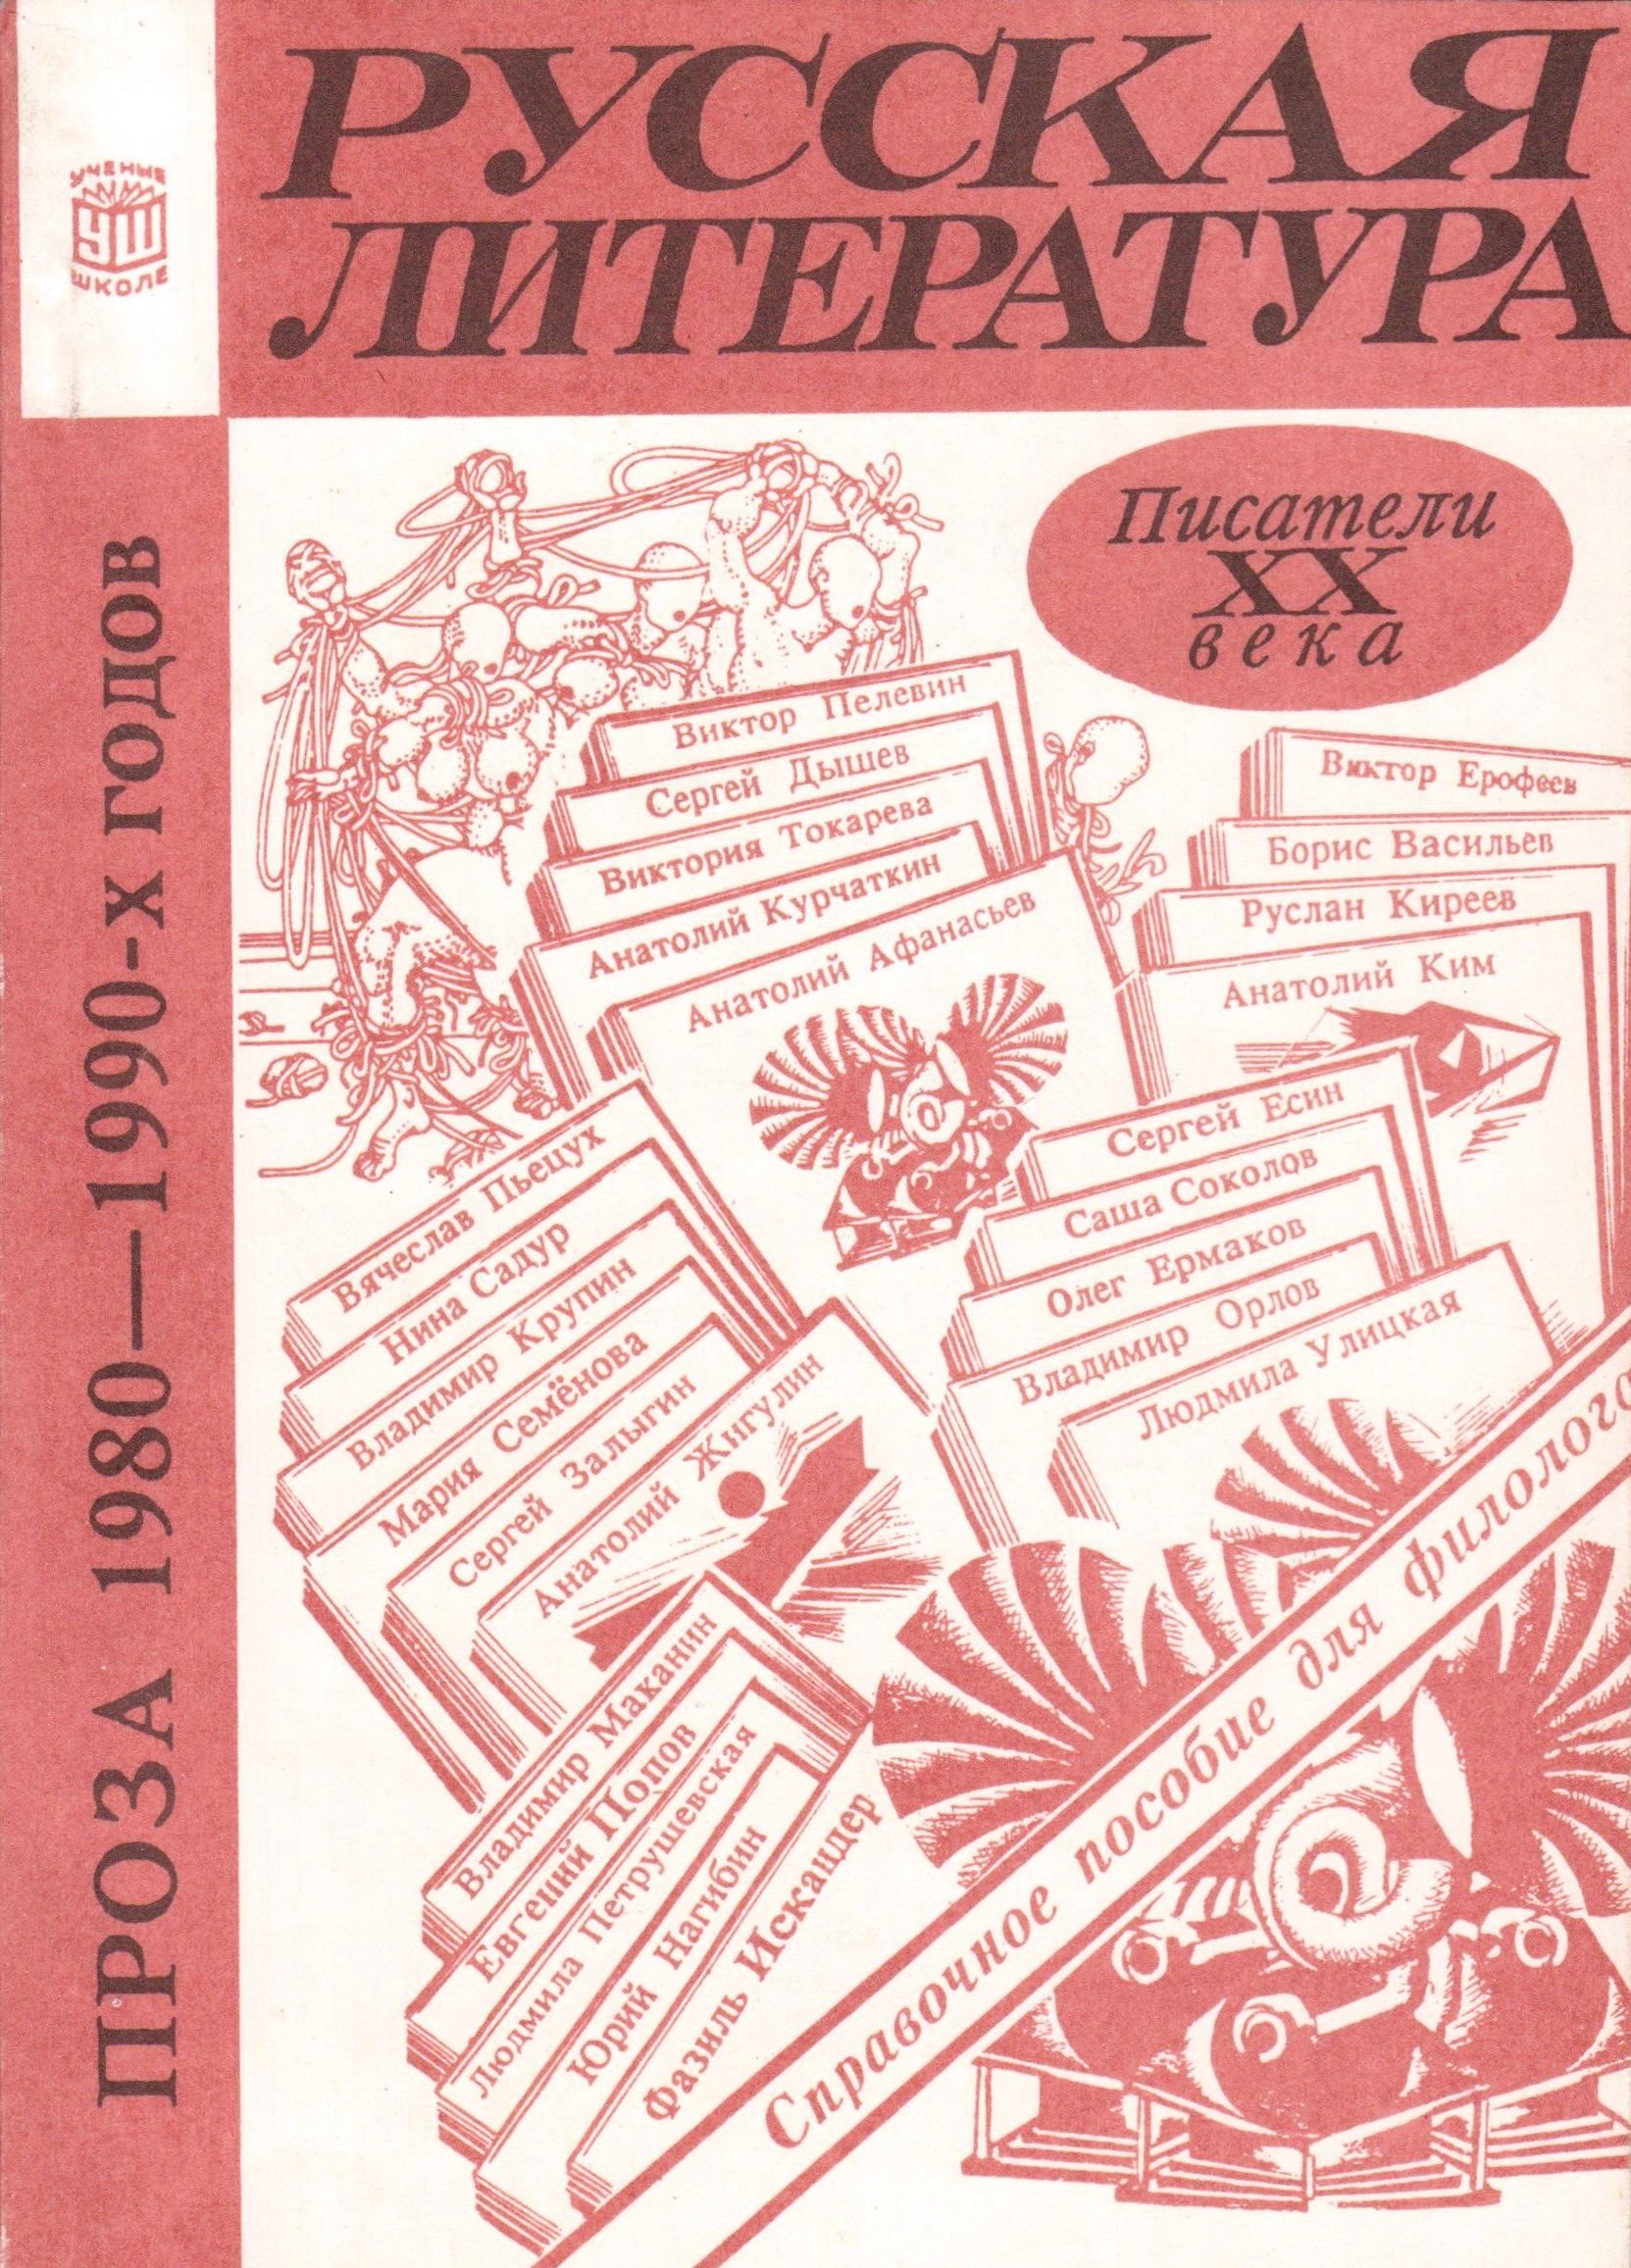 Произведения советского периода. Литература 1990. Литература 1990 года. Литература 90-х годов. Литература 1990-х годов.